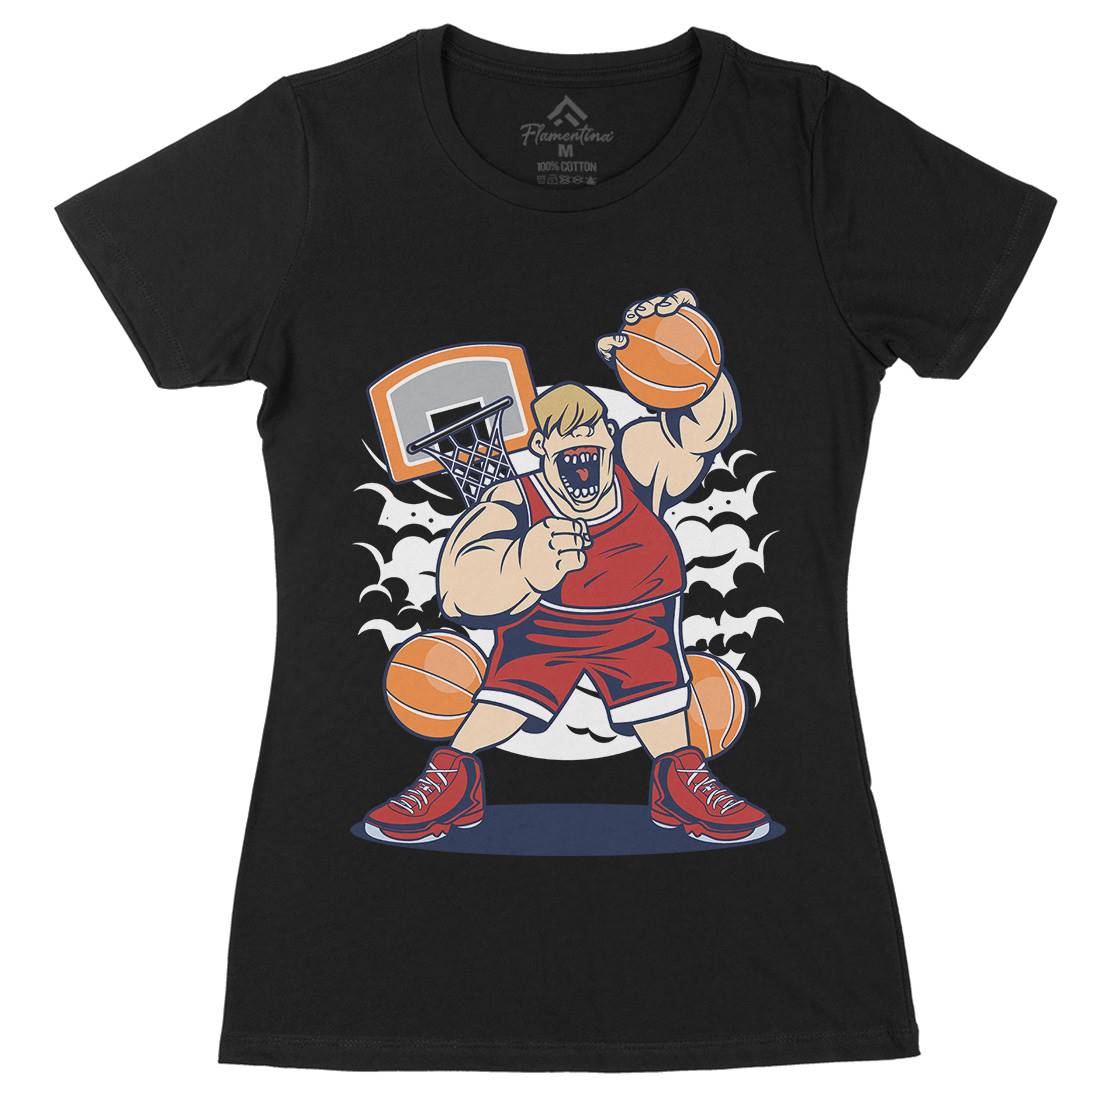 Fat Basketball Player Womens Organic Crew Neck T-Shirt Sport C350